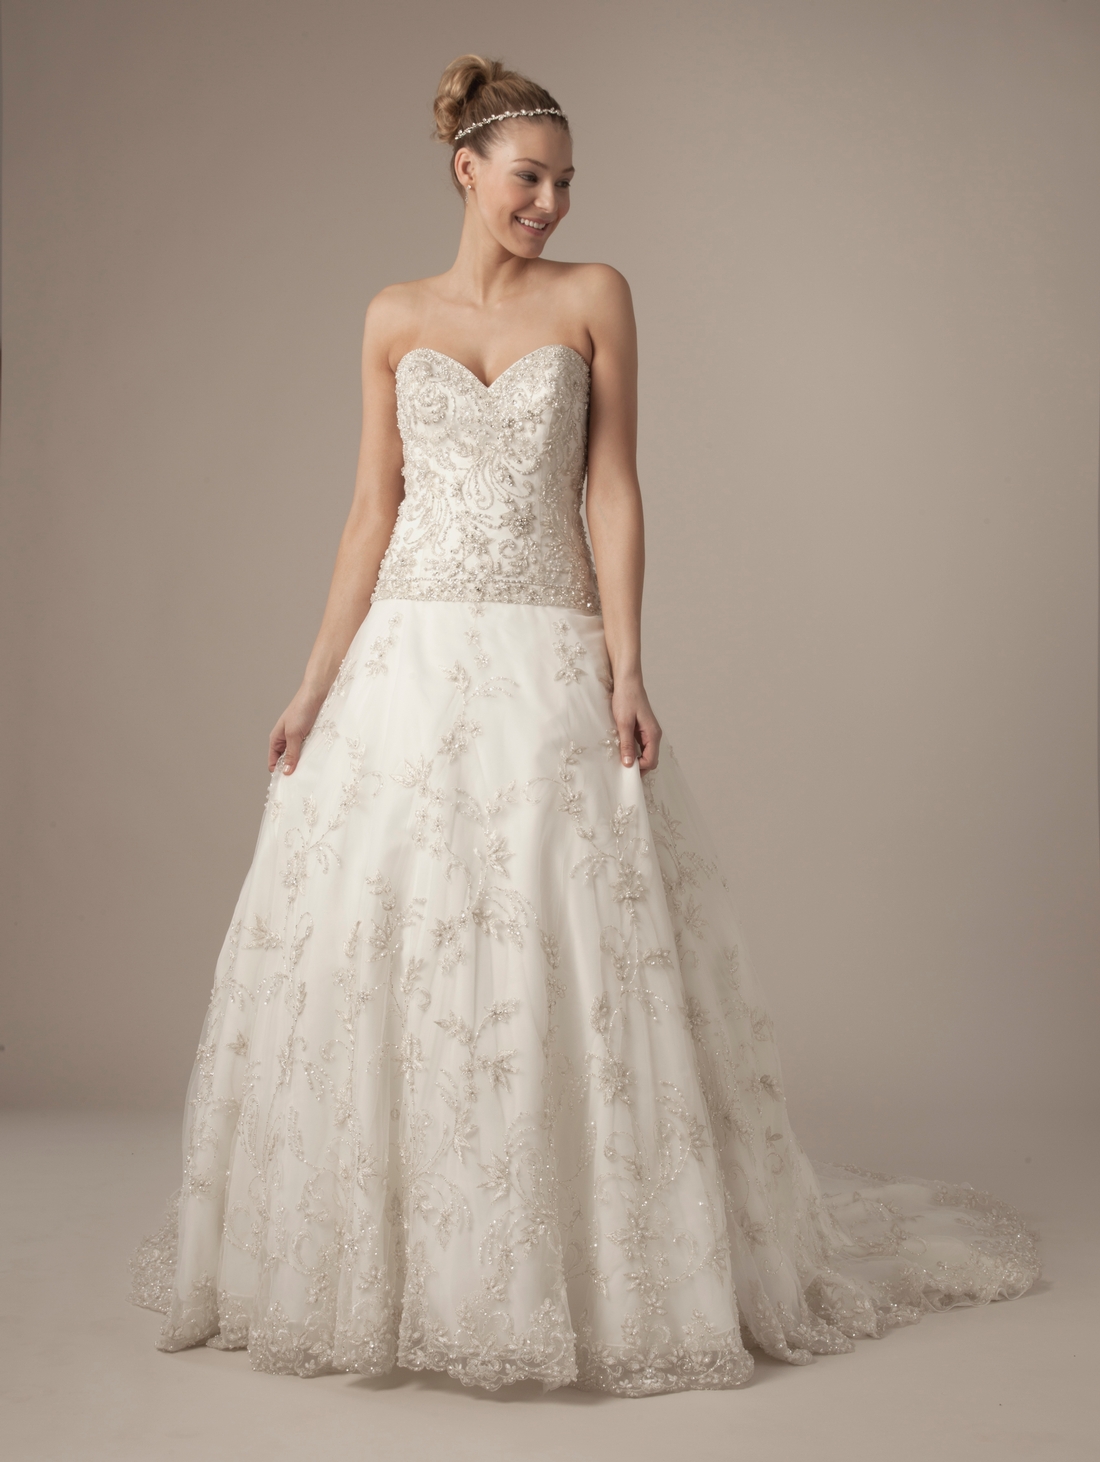 Ten Best Lace Wedding Dress Designers BestBride101